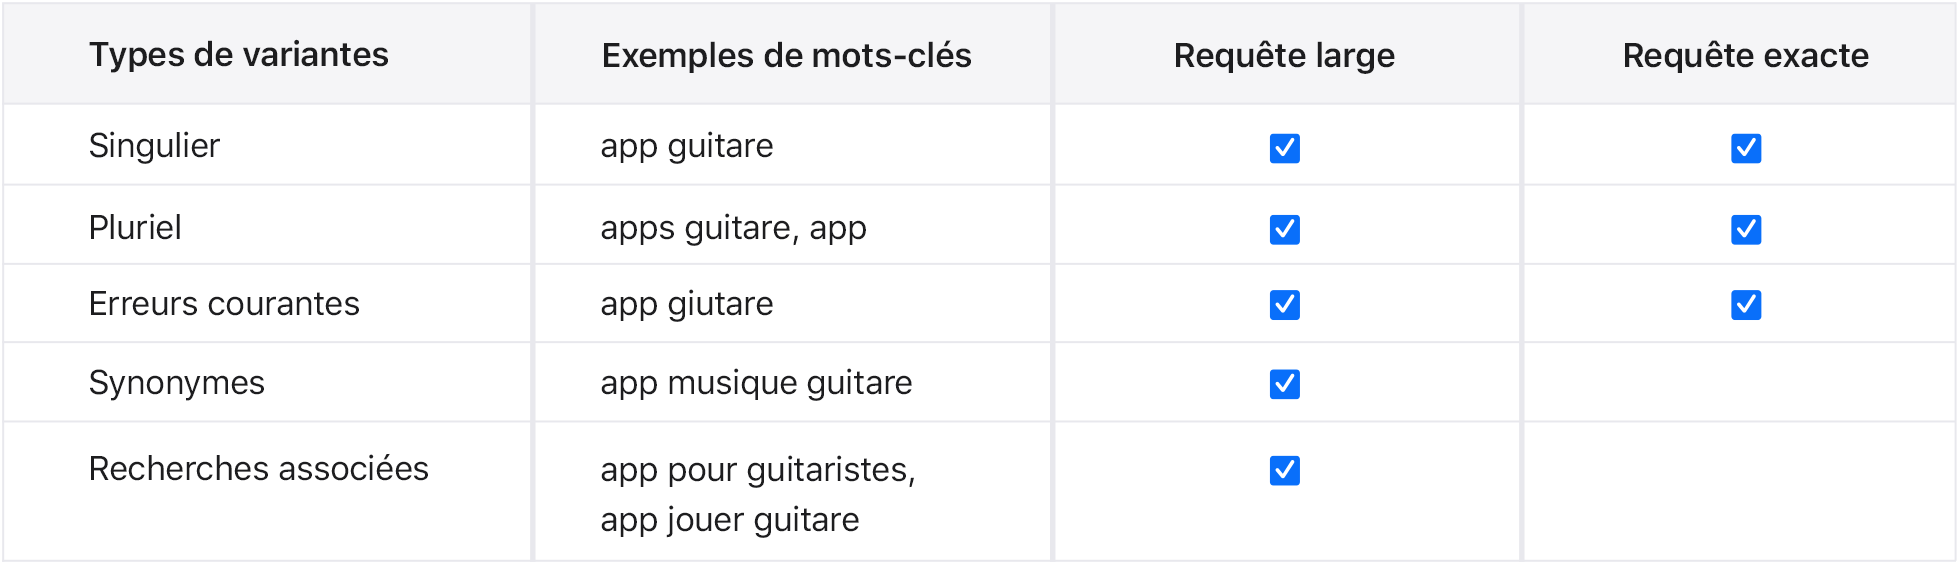 Variantes de types de correspondance pour l’exemple d’app Music Teacher.